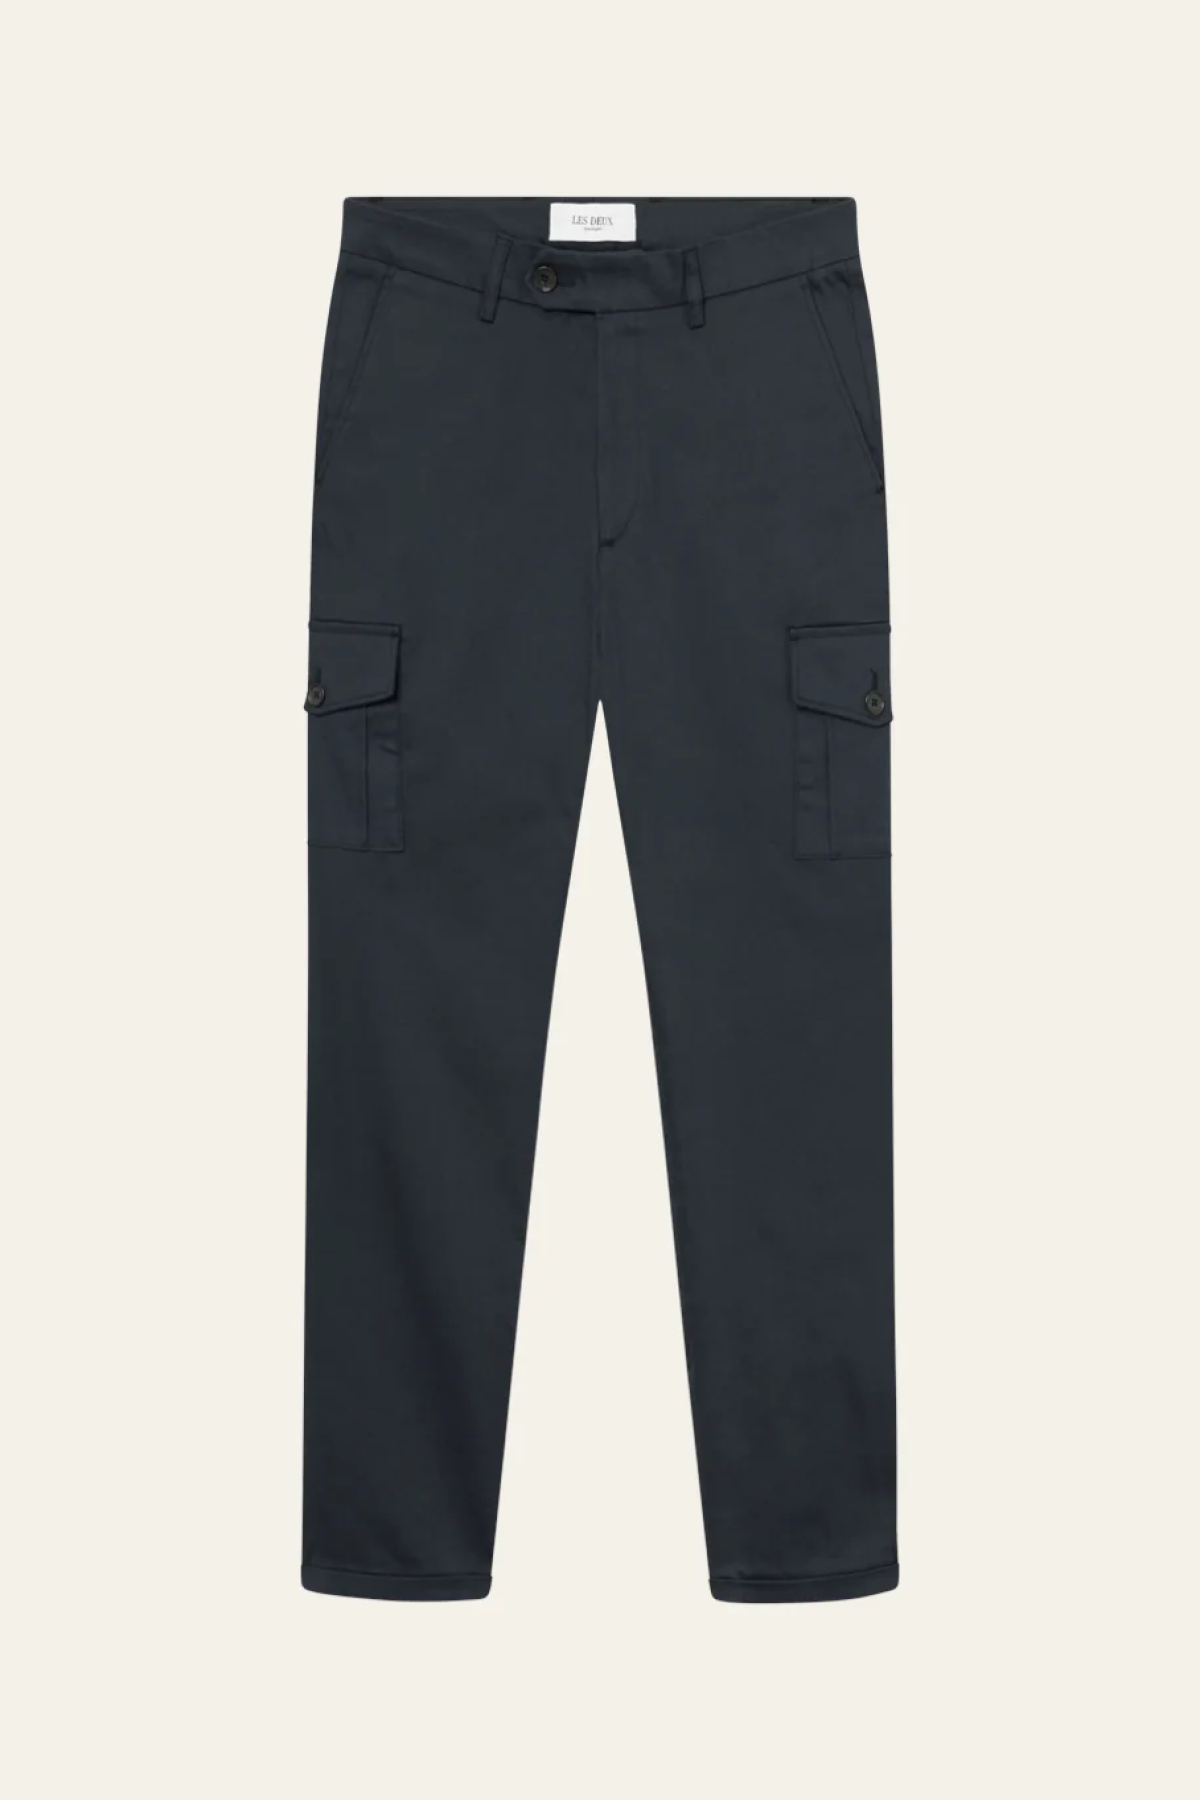 Les Deux Como Cotton Cargo Suit Pants - Navy